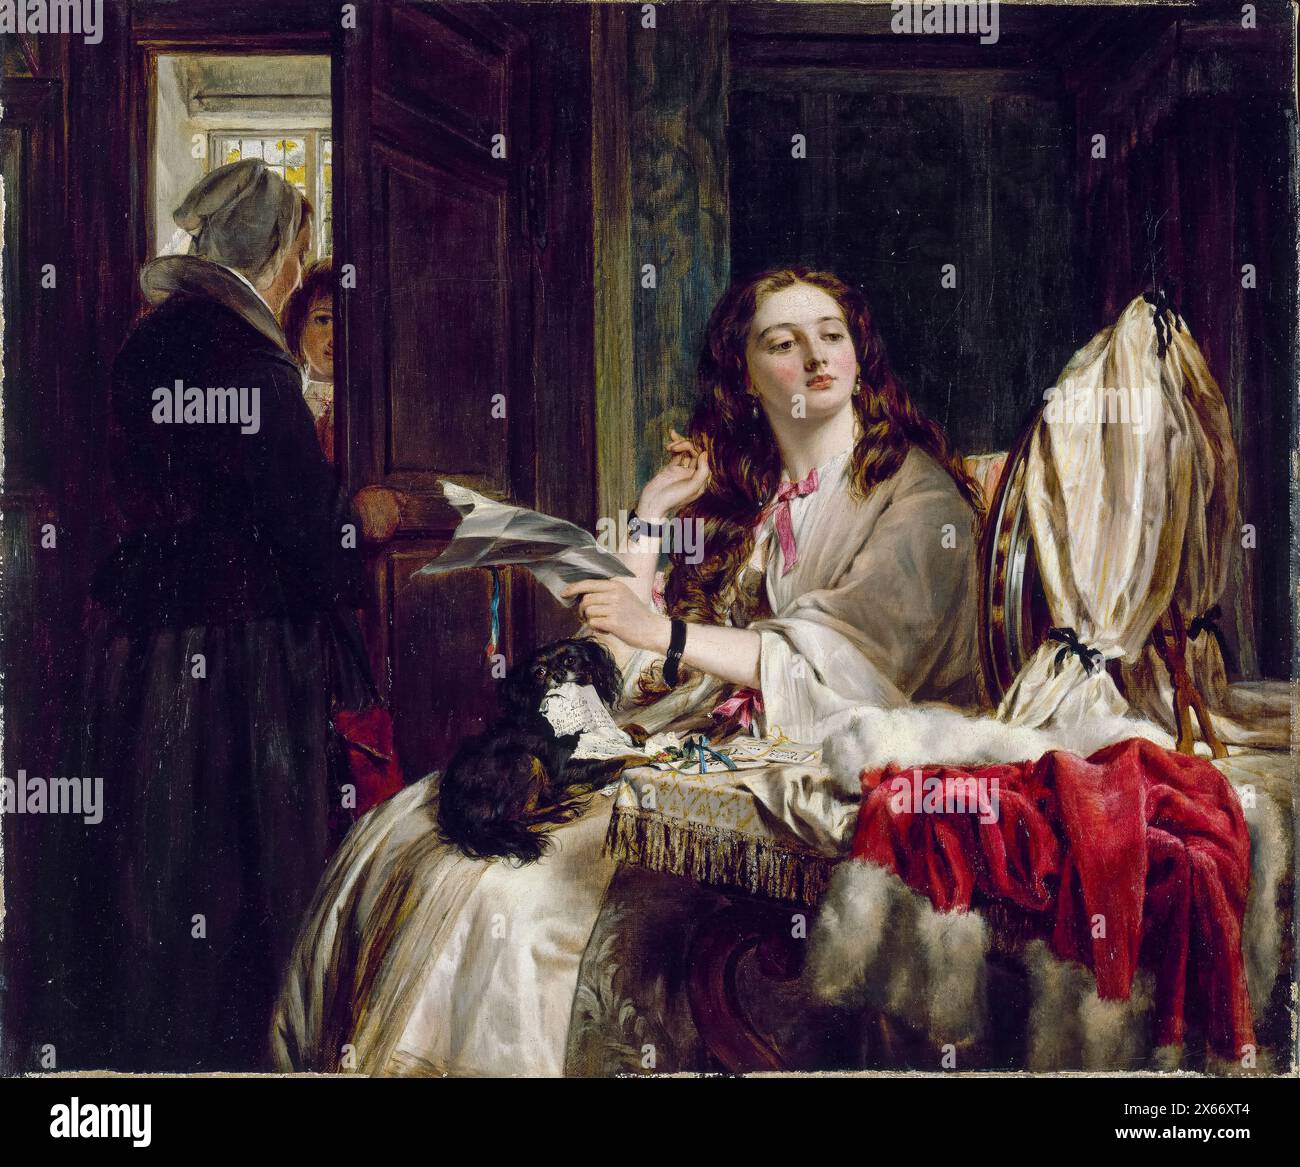 John Callcott Horsley peinture, le matin de la Saint Valentin, huile sur toile, 1865 Banque D'Images